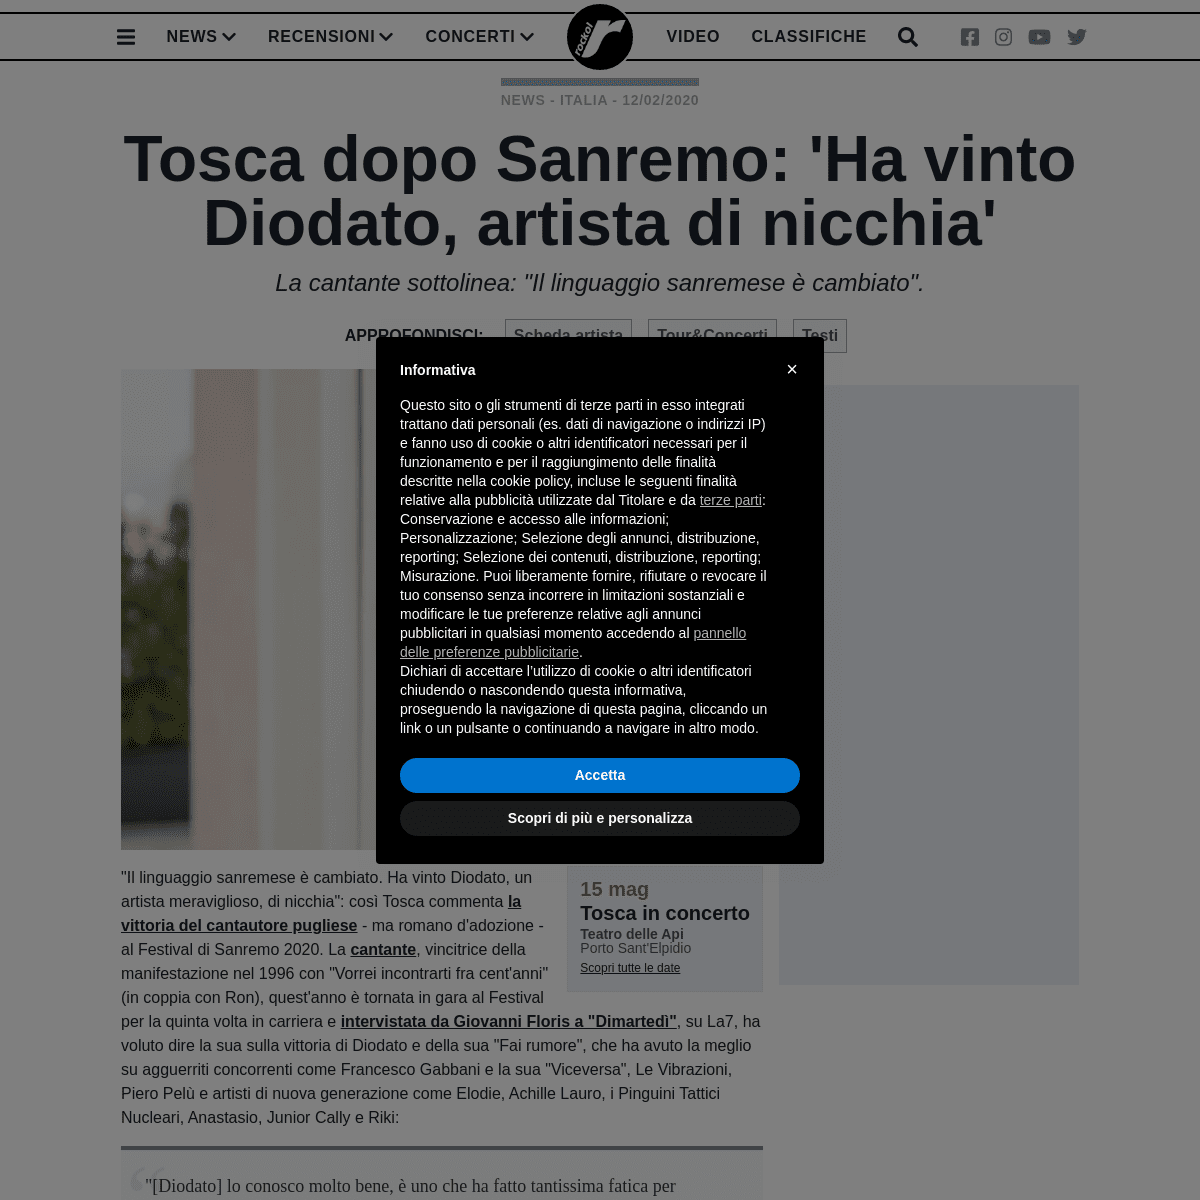 A complete backup of www.rockol.it/news-711389/tosca-sanremo-2020-ha-vinto-diodato-artista-nicchia-intervista